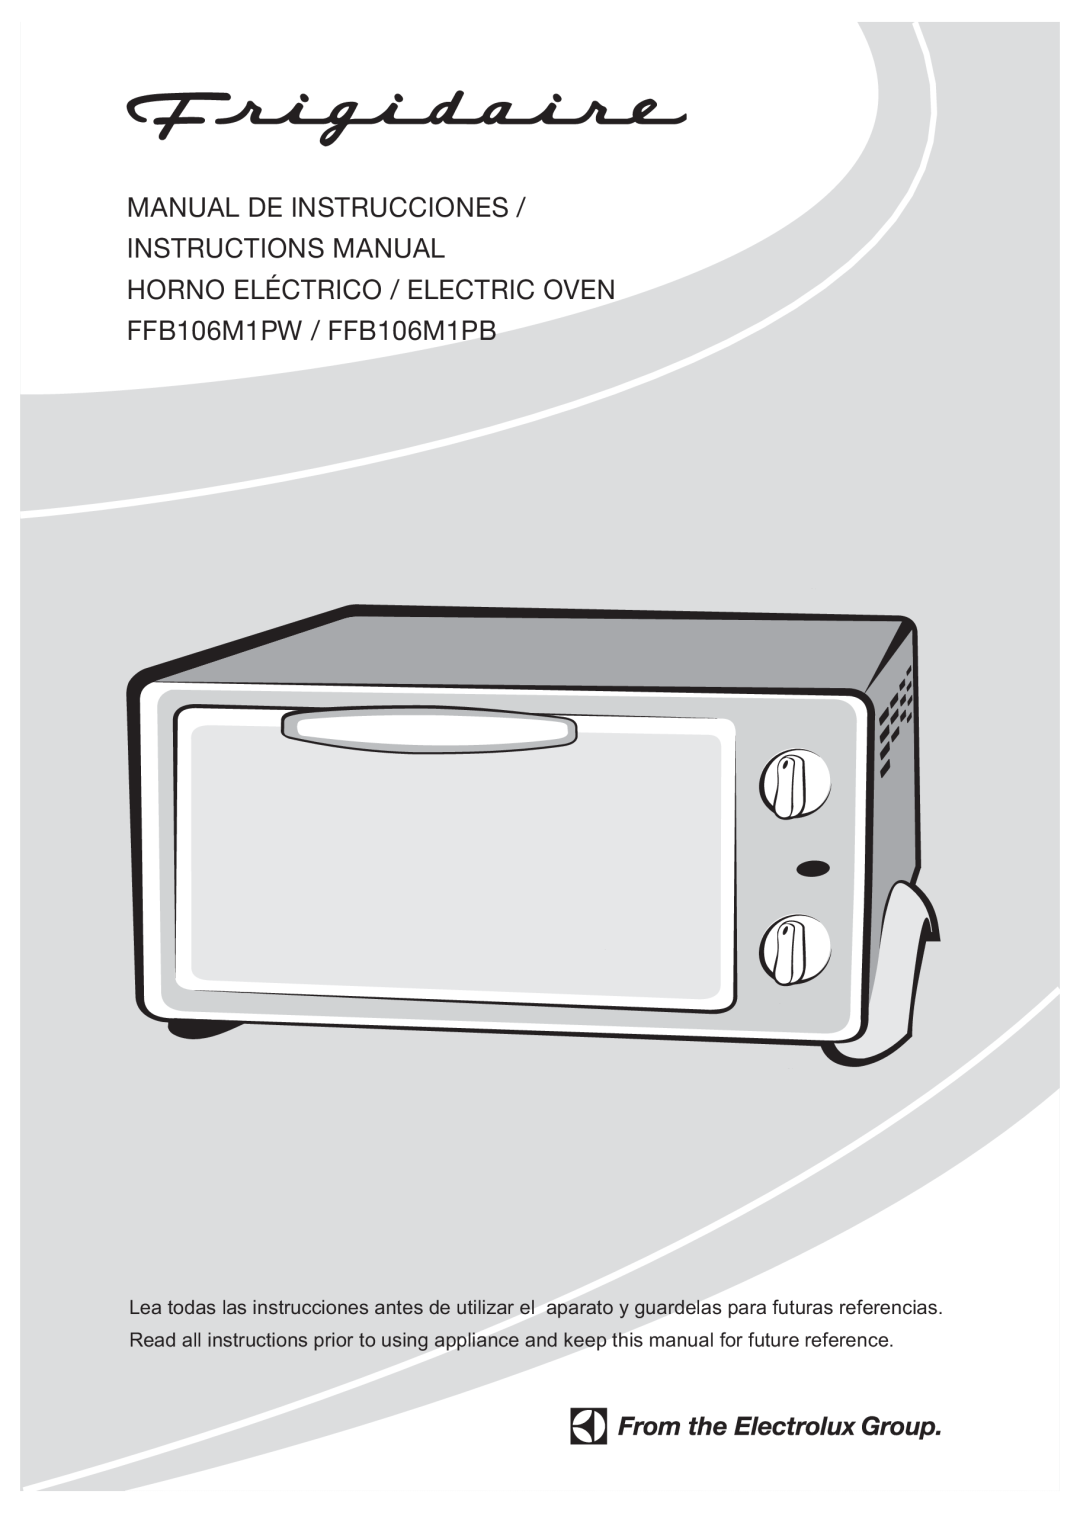 GE manual Manual De Instrucciones Instructions Manual, HORNO ELÉCTRICO / ELECTRIC OVEN FFB106M1PW / FFB106M1PB 